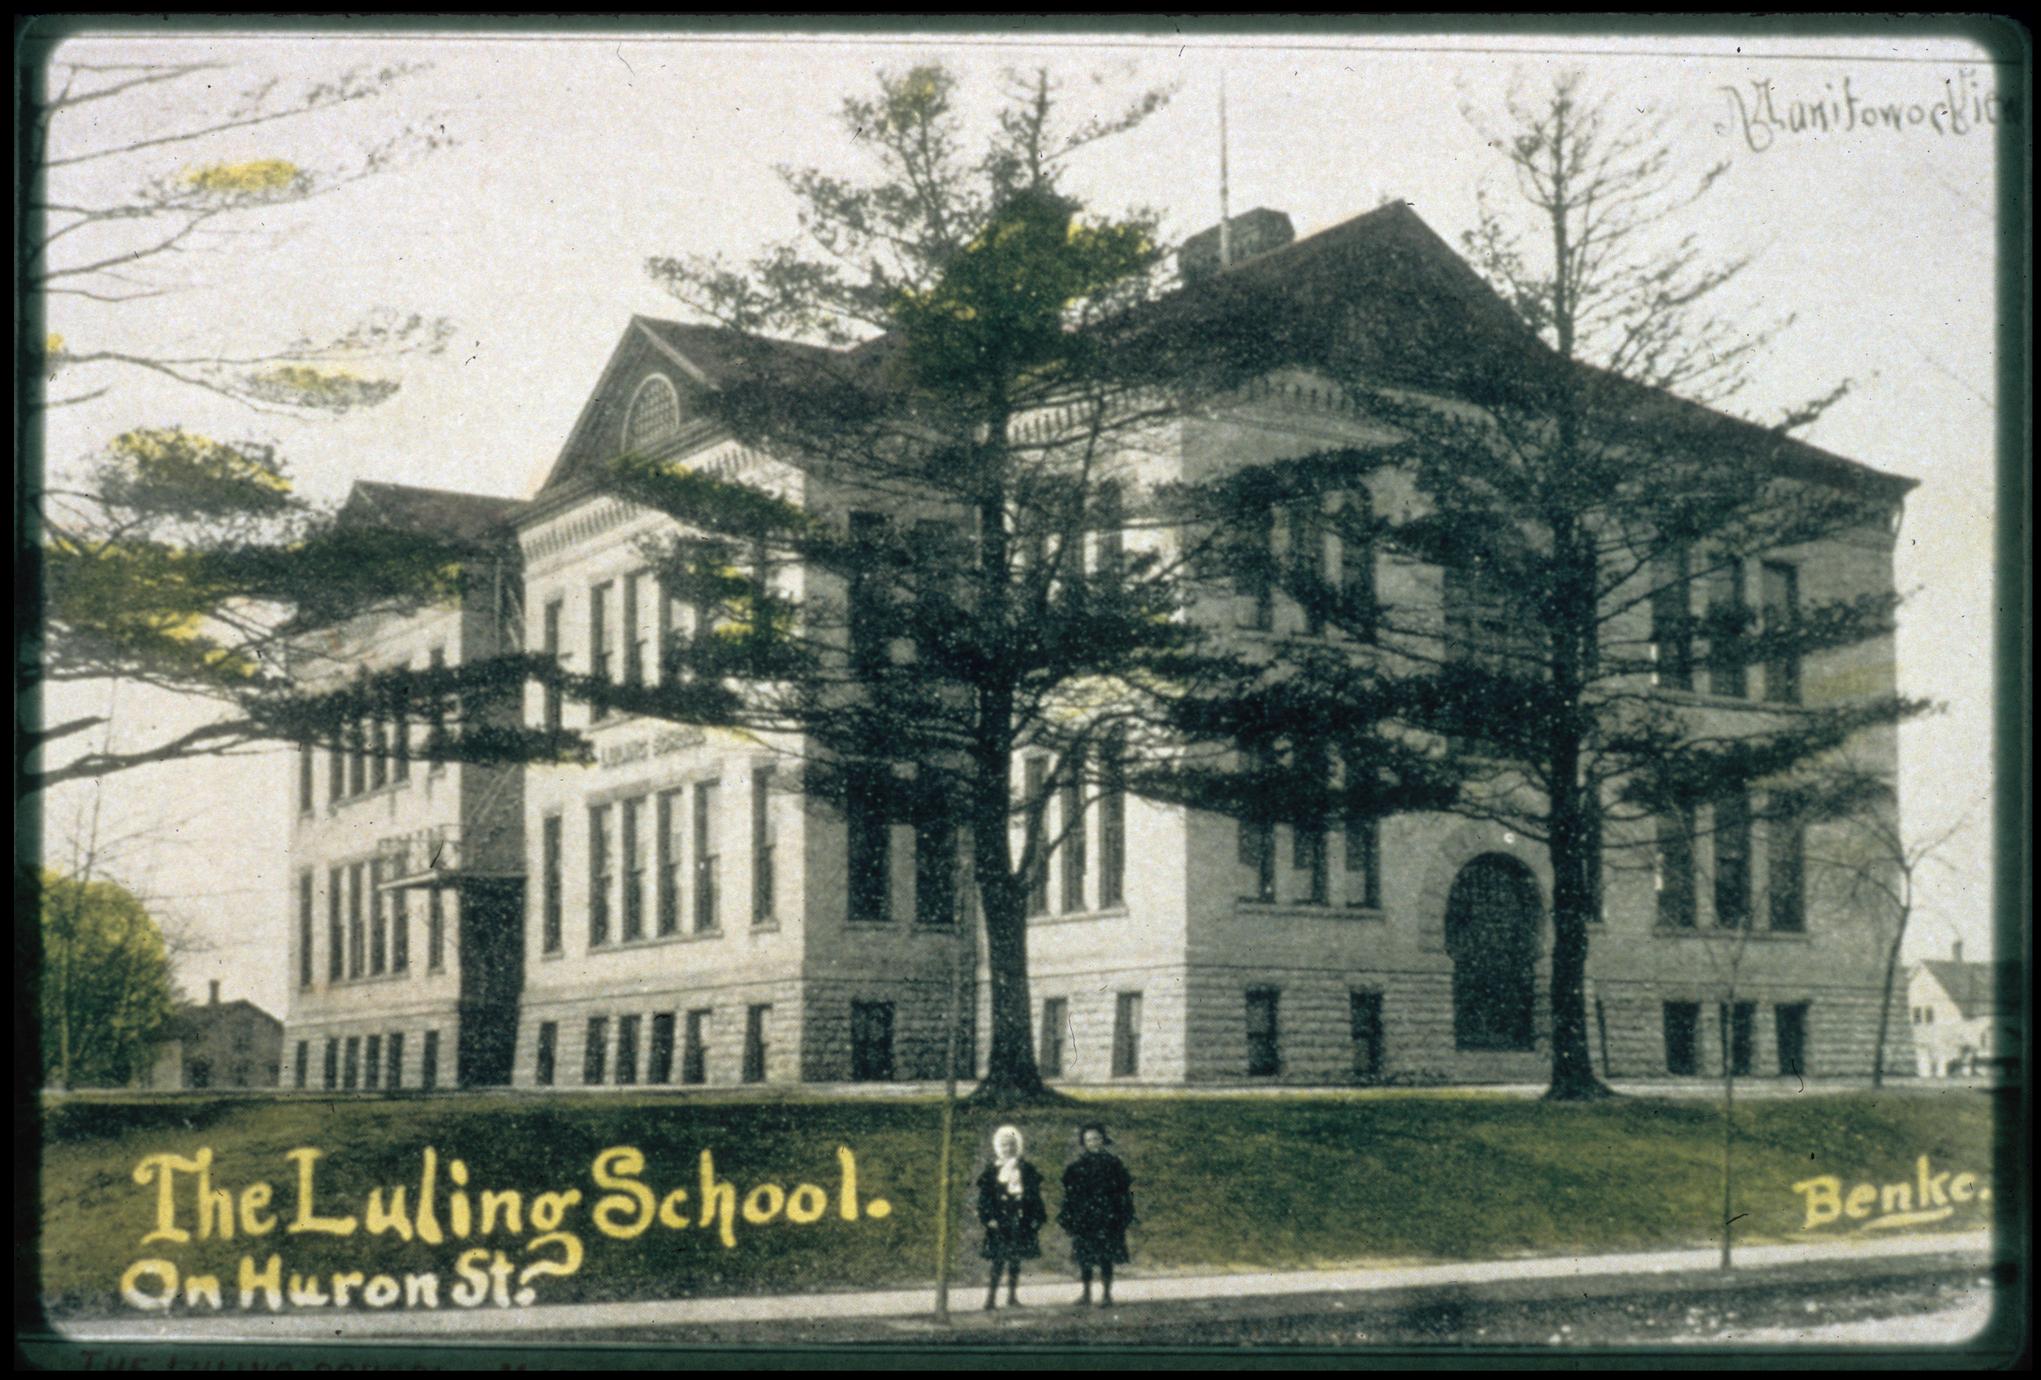 Sixth (McKinley) School